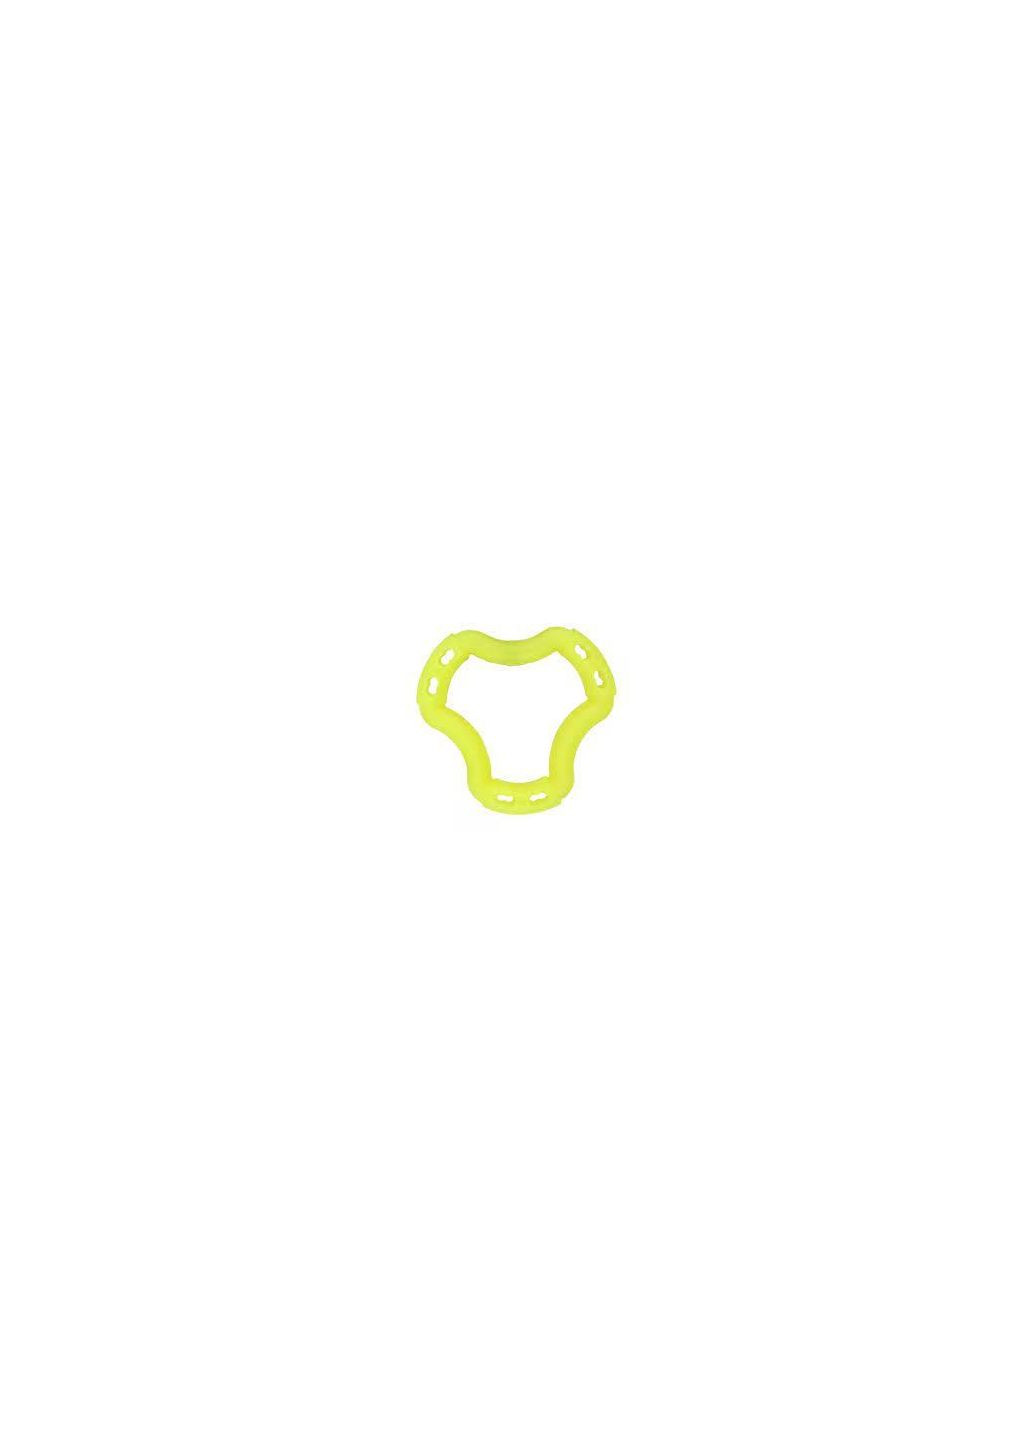 Игрушка Fun кольцо 6 сторон, жёлтый, 20 см 88221 AnimAll (278309119)